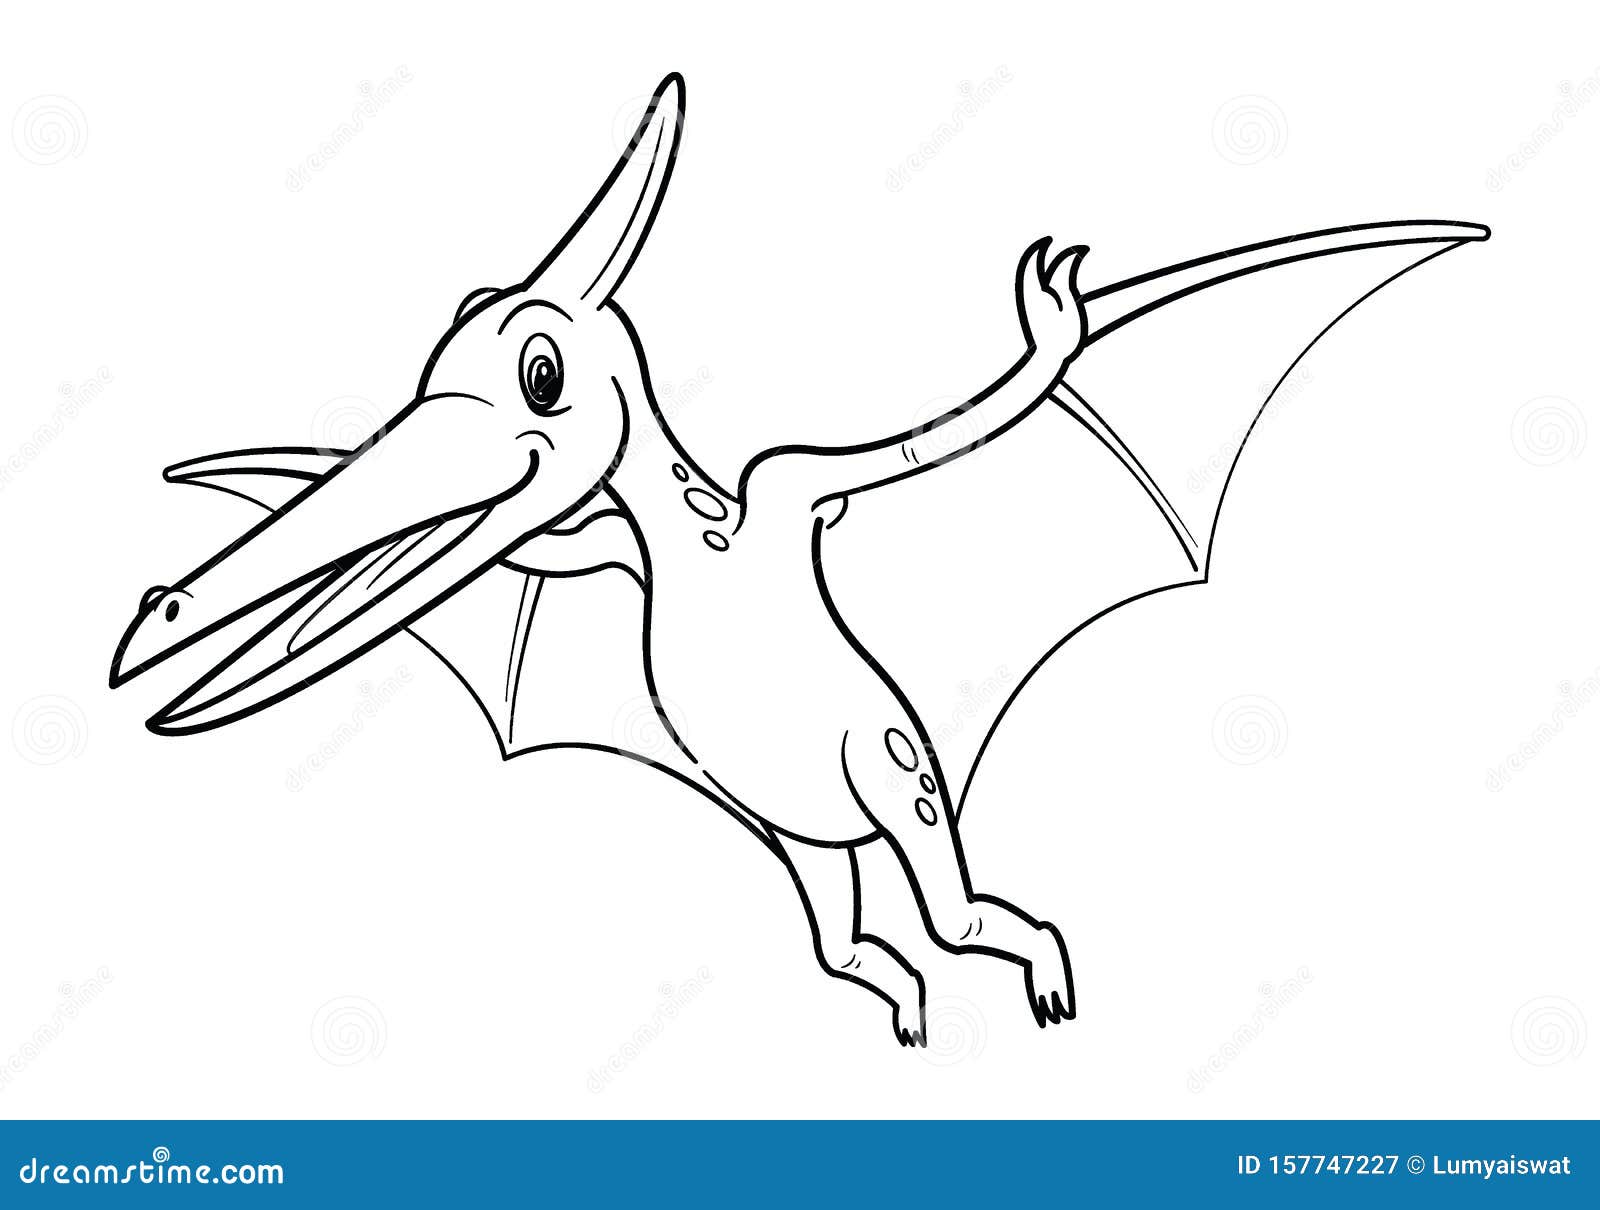 Cute cartoon dinosaur pteranodon character stock vector